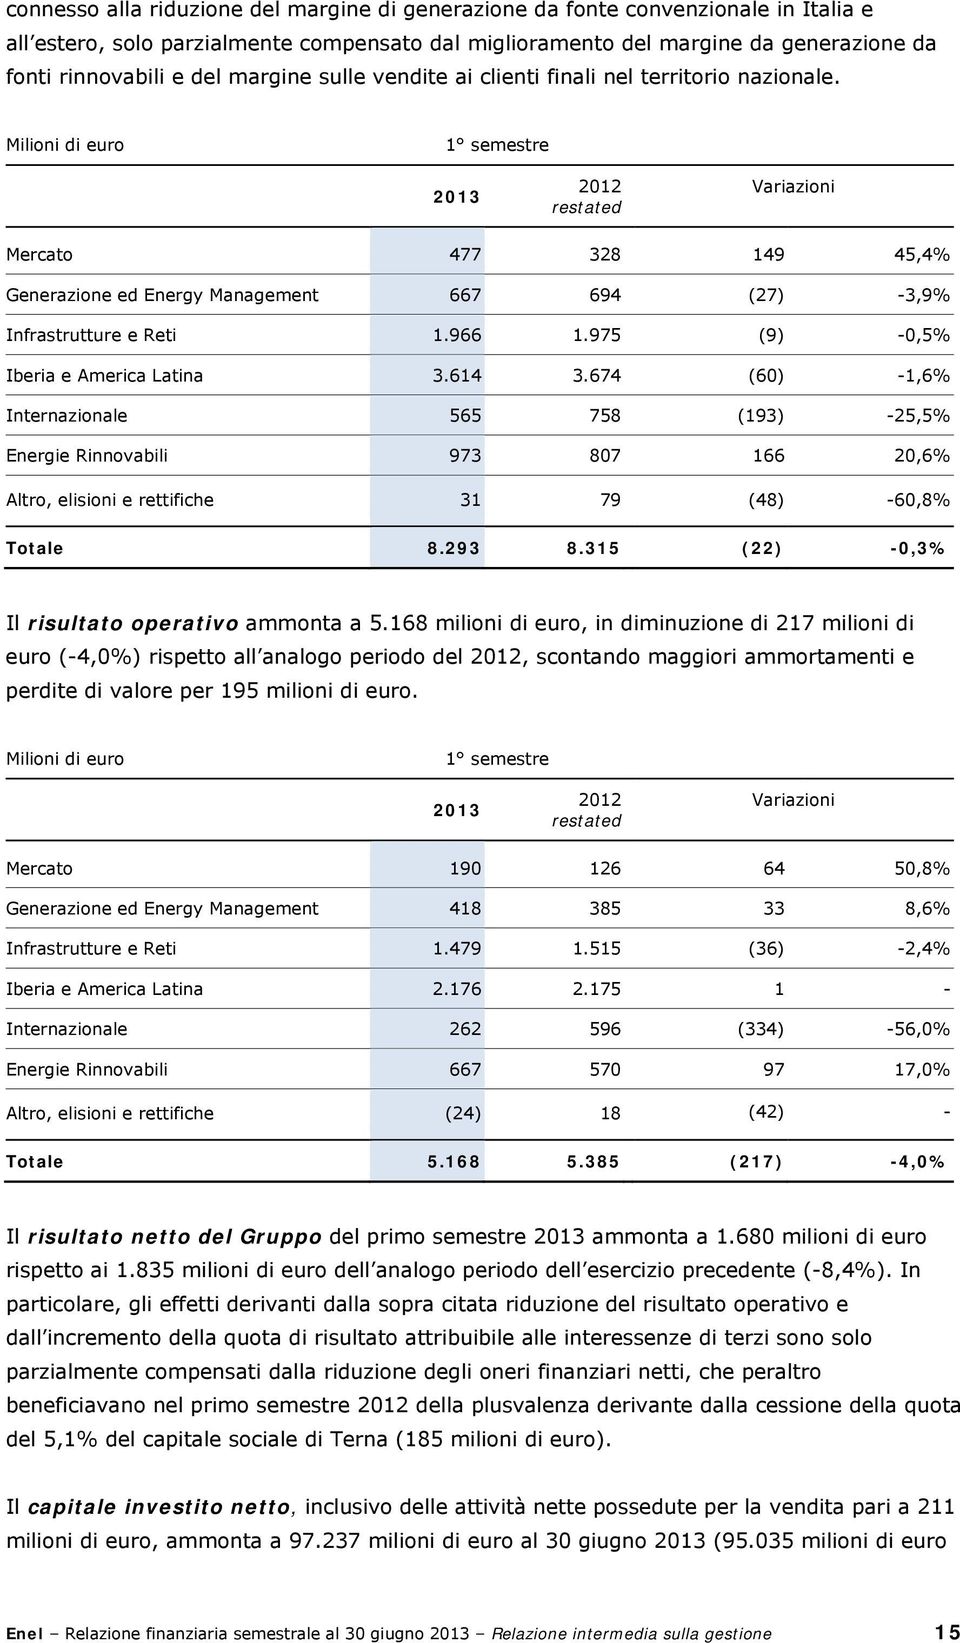 Milioni di euro 1 semestre 2013 2012 restated Variazioni Mercato 477 328 149 45,4% Generazione ed Energy Management 667 694 (27) -3,9% Infrastrutture e Reti 1.966 1.